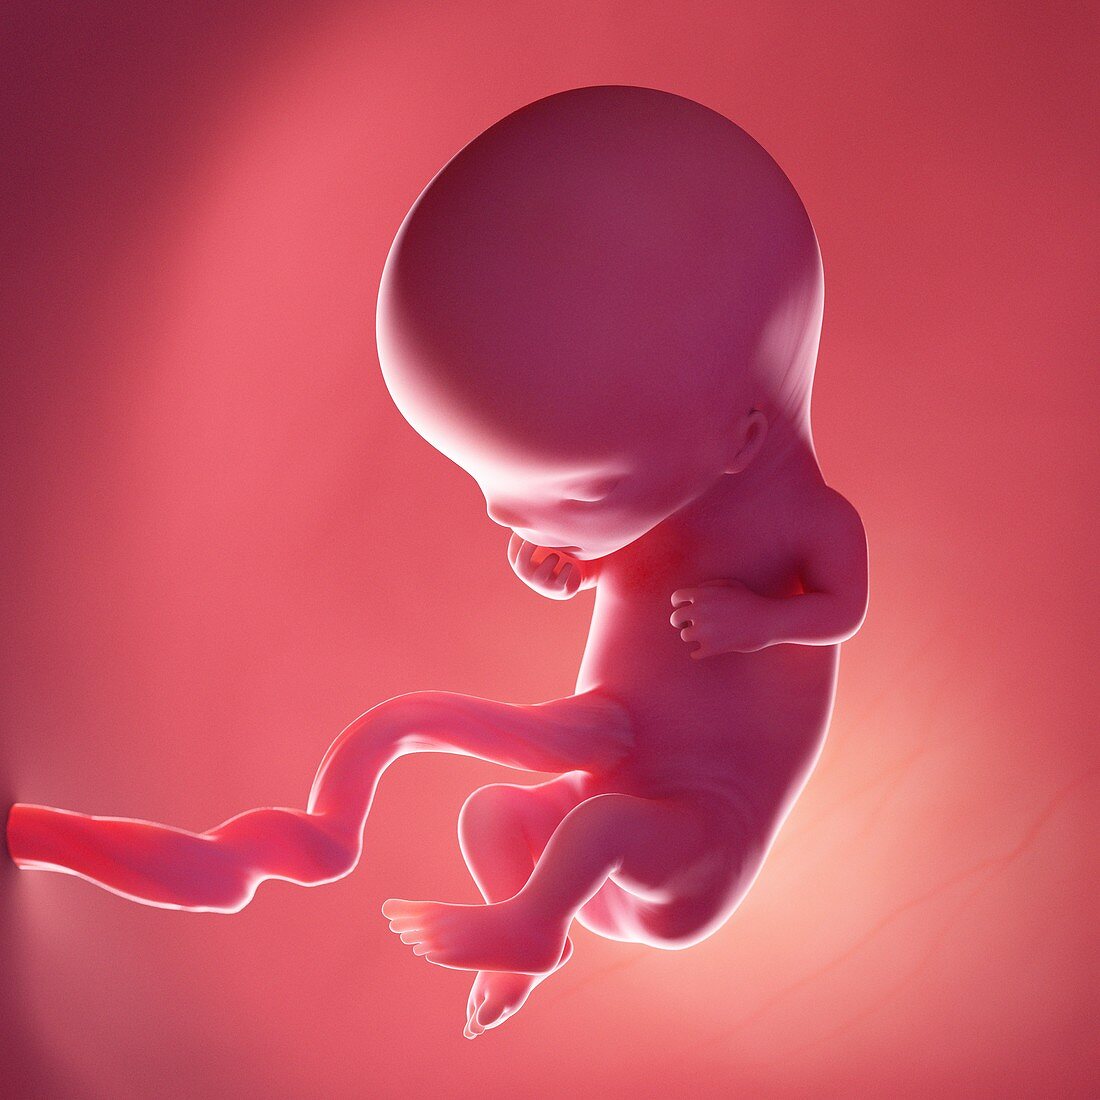 Fetus at week 11, illustration